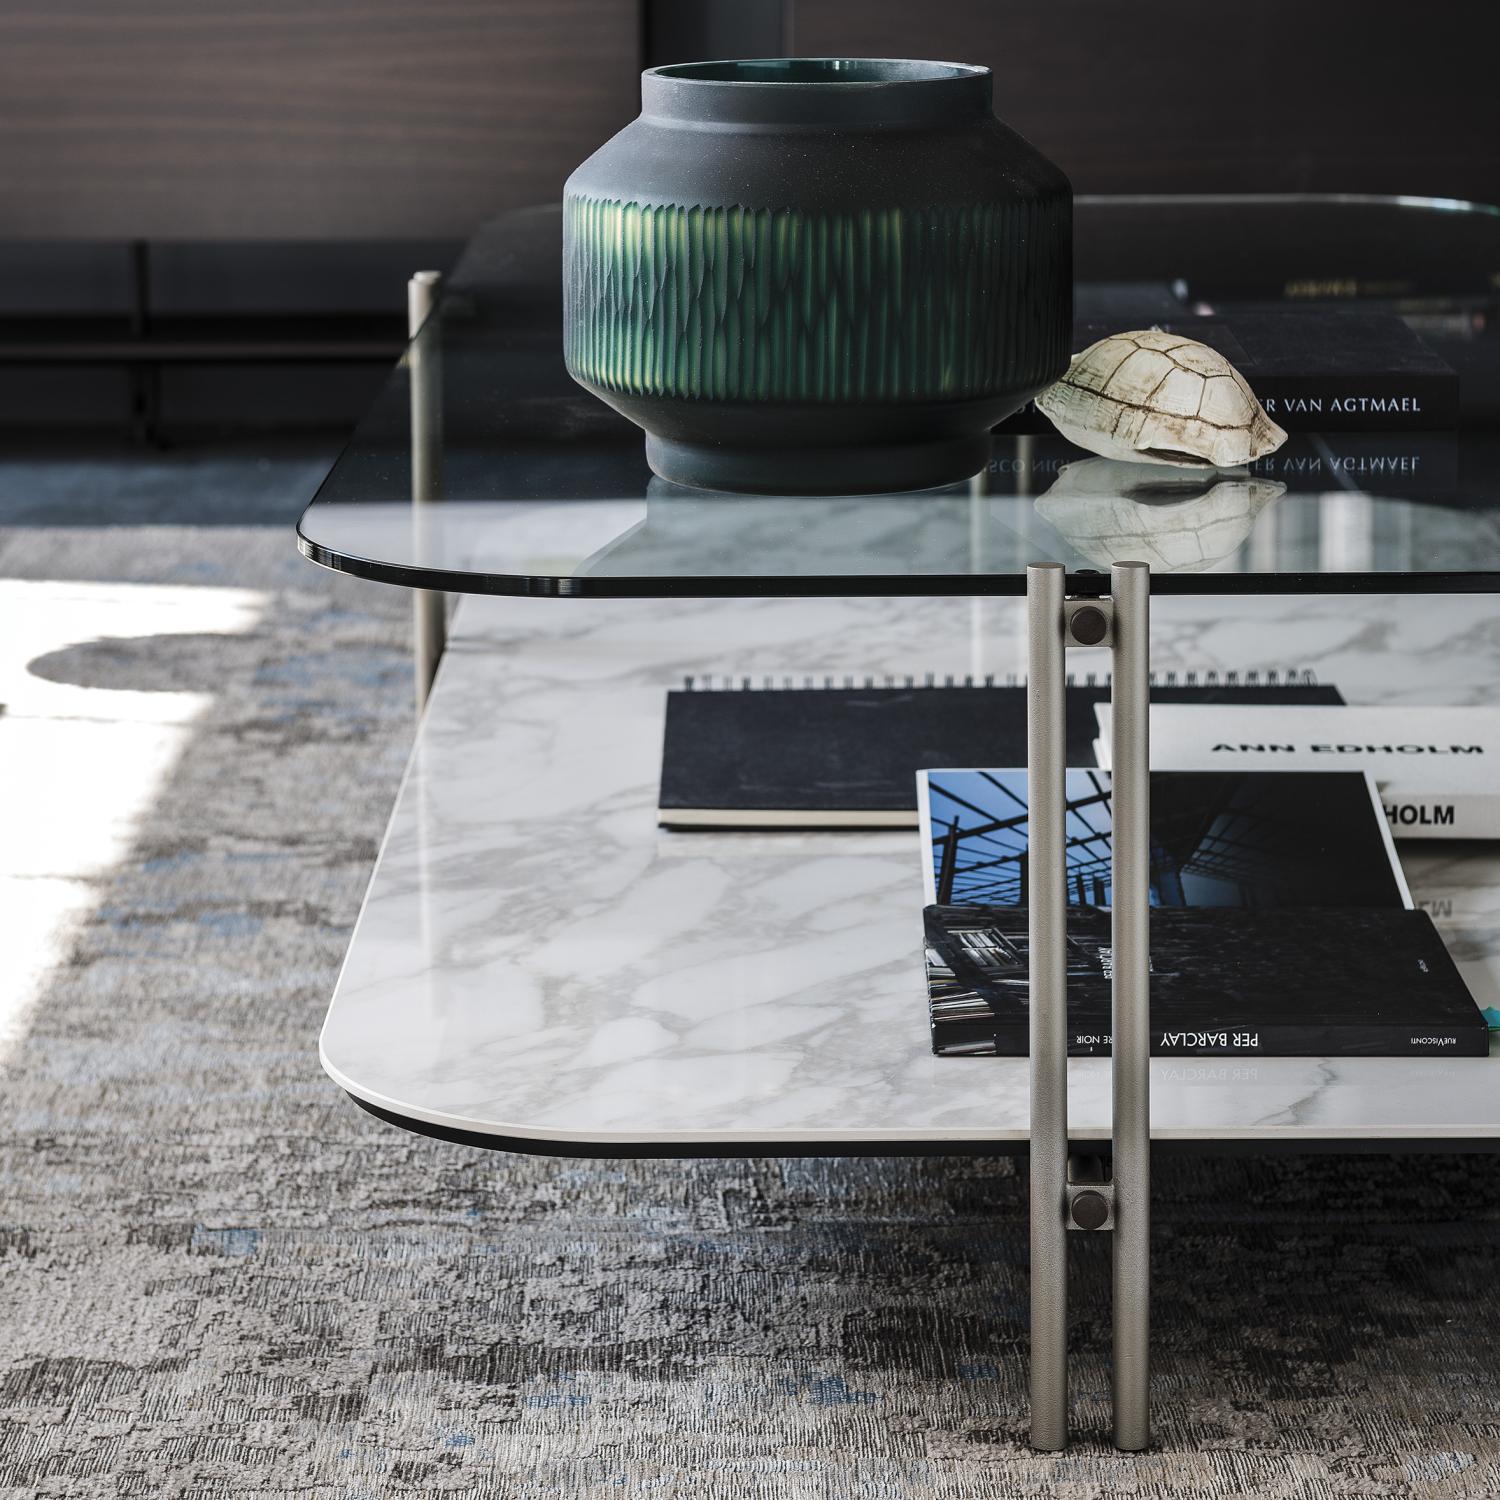 Tavolino Biplano dal design leggero e minimale